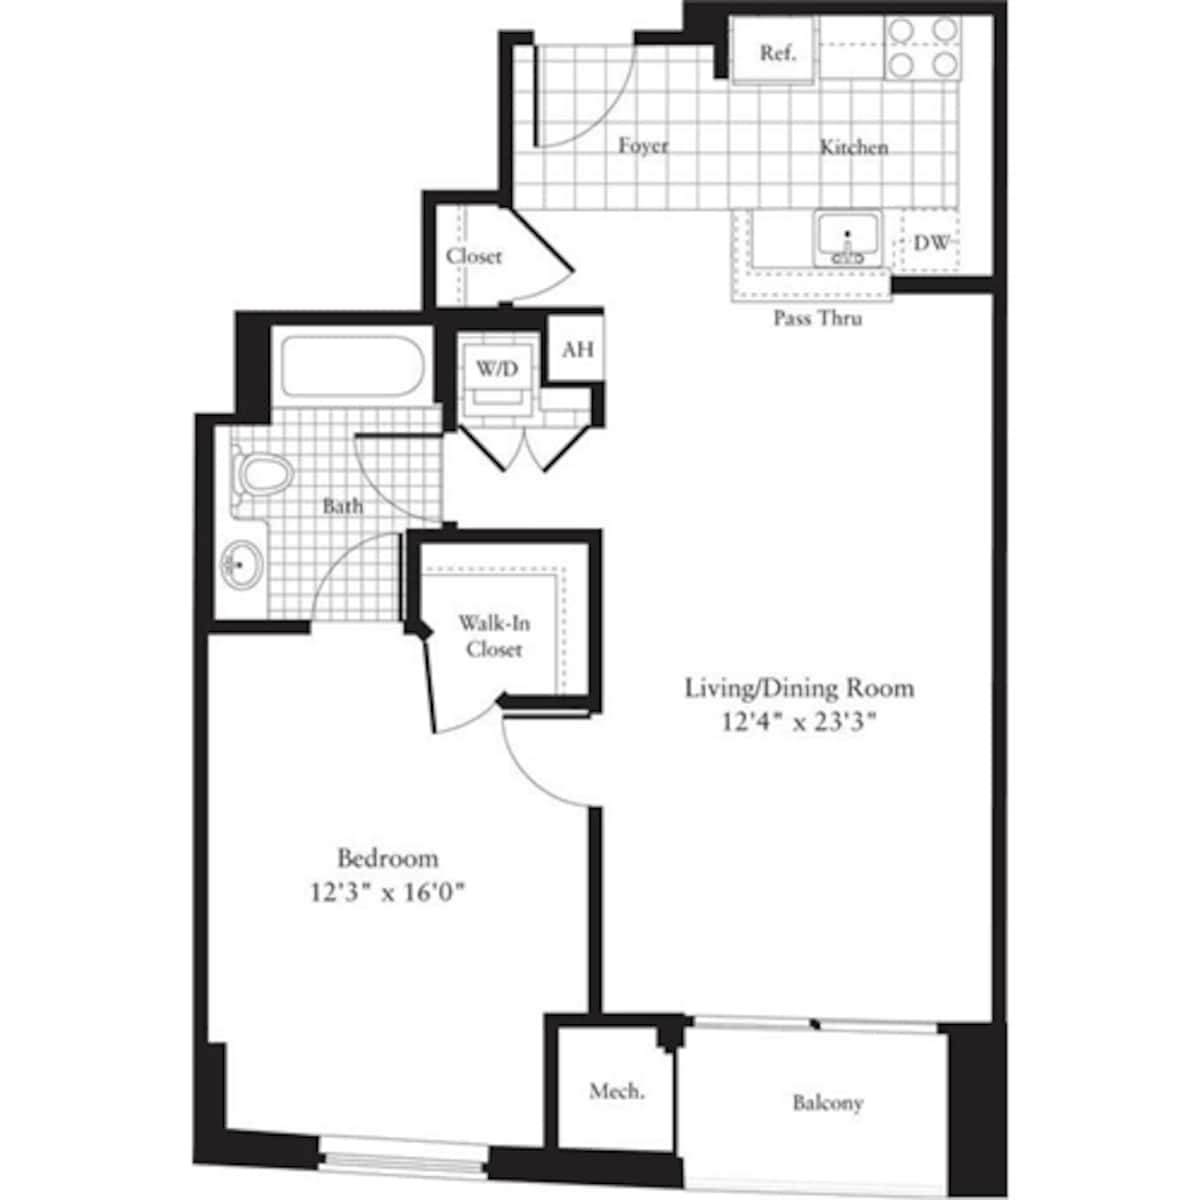 Floorplan diagram for 1 Bedroom K, showing 1 bedroom